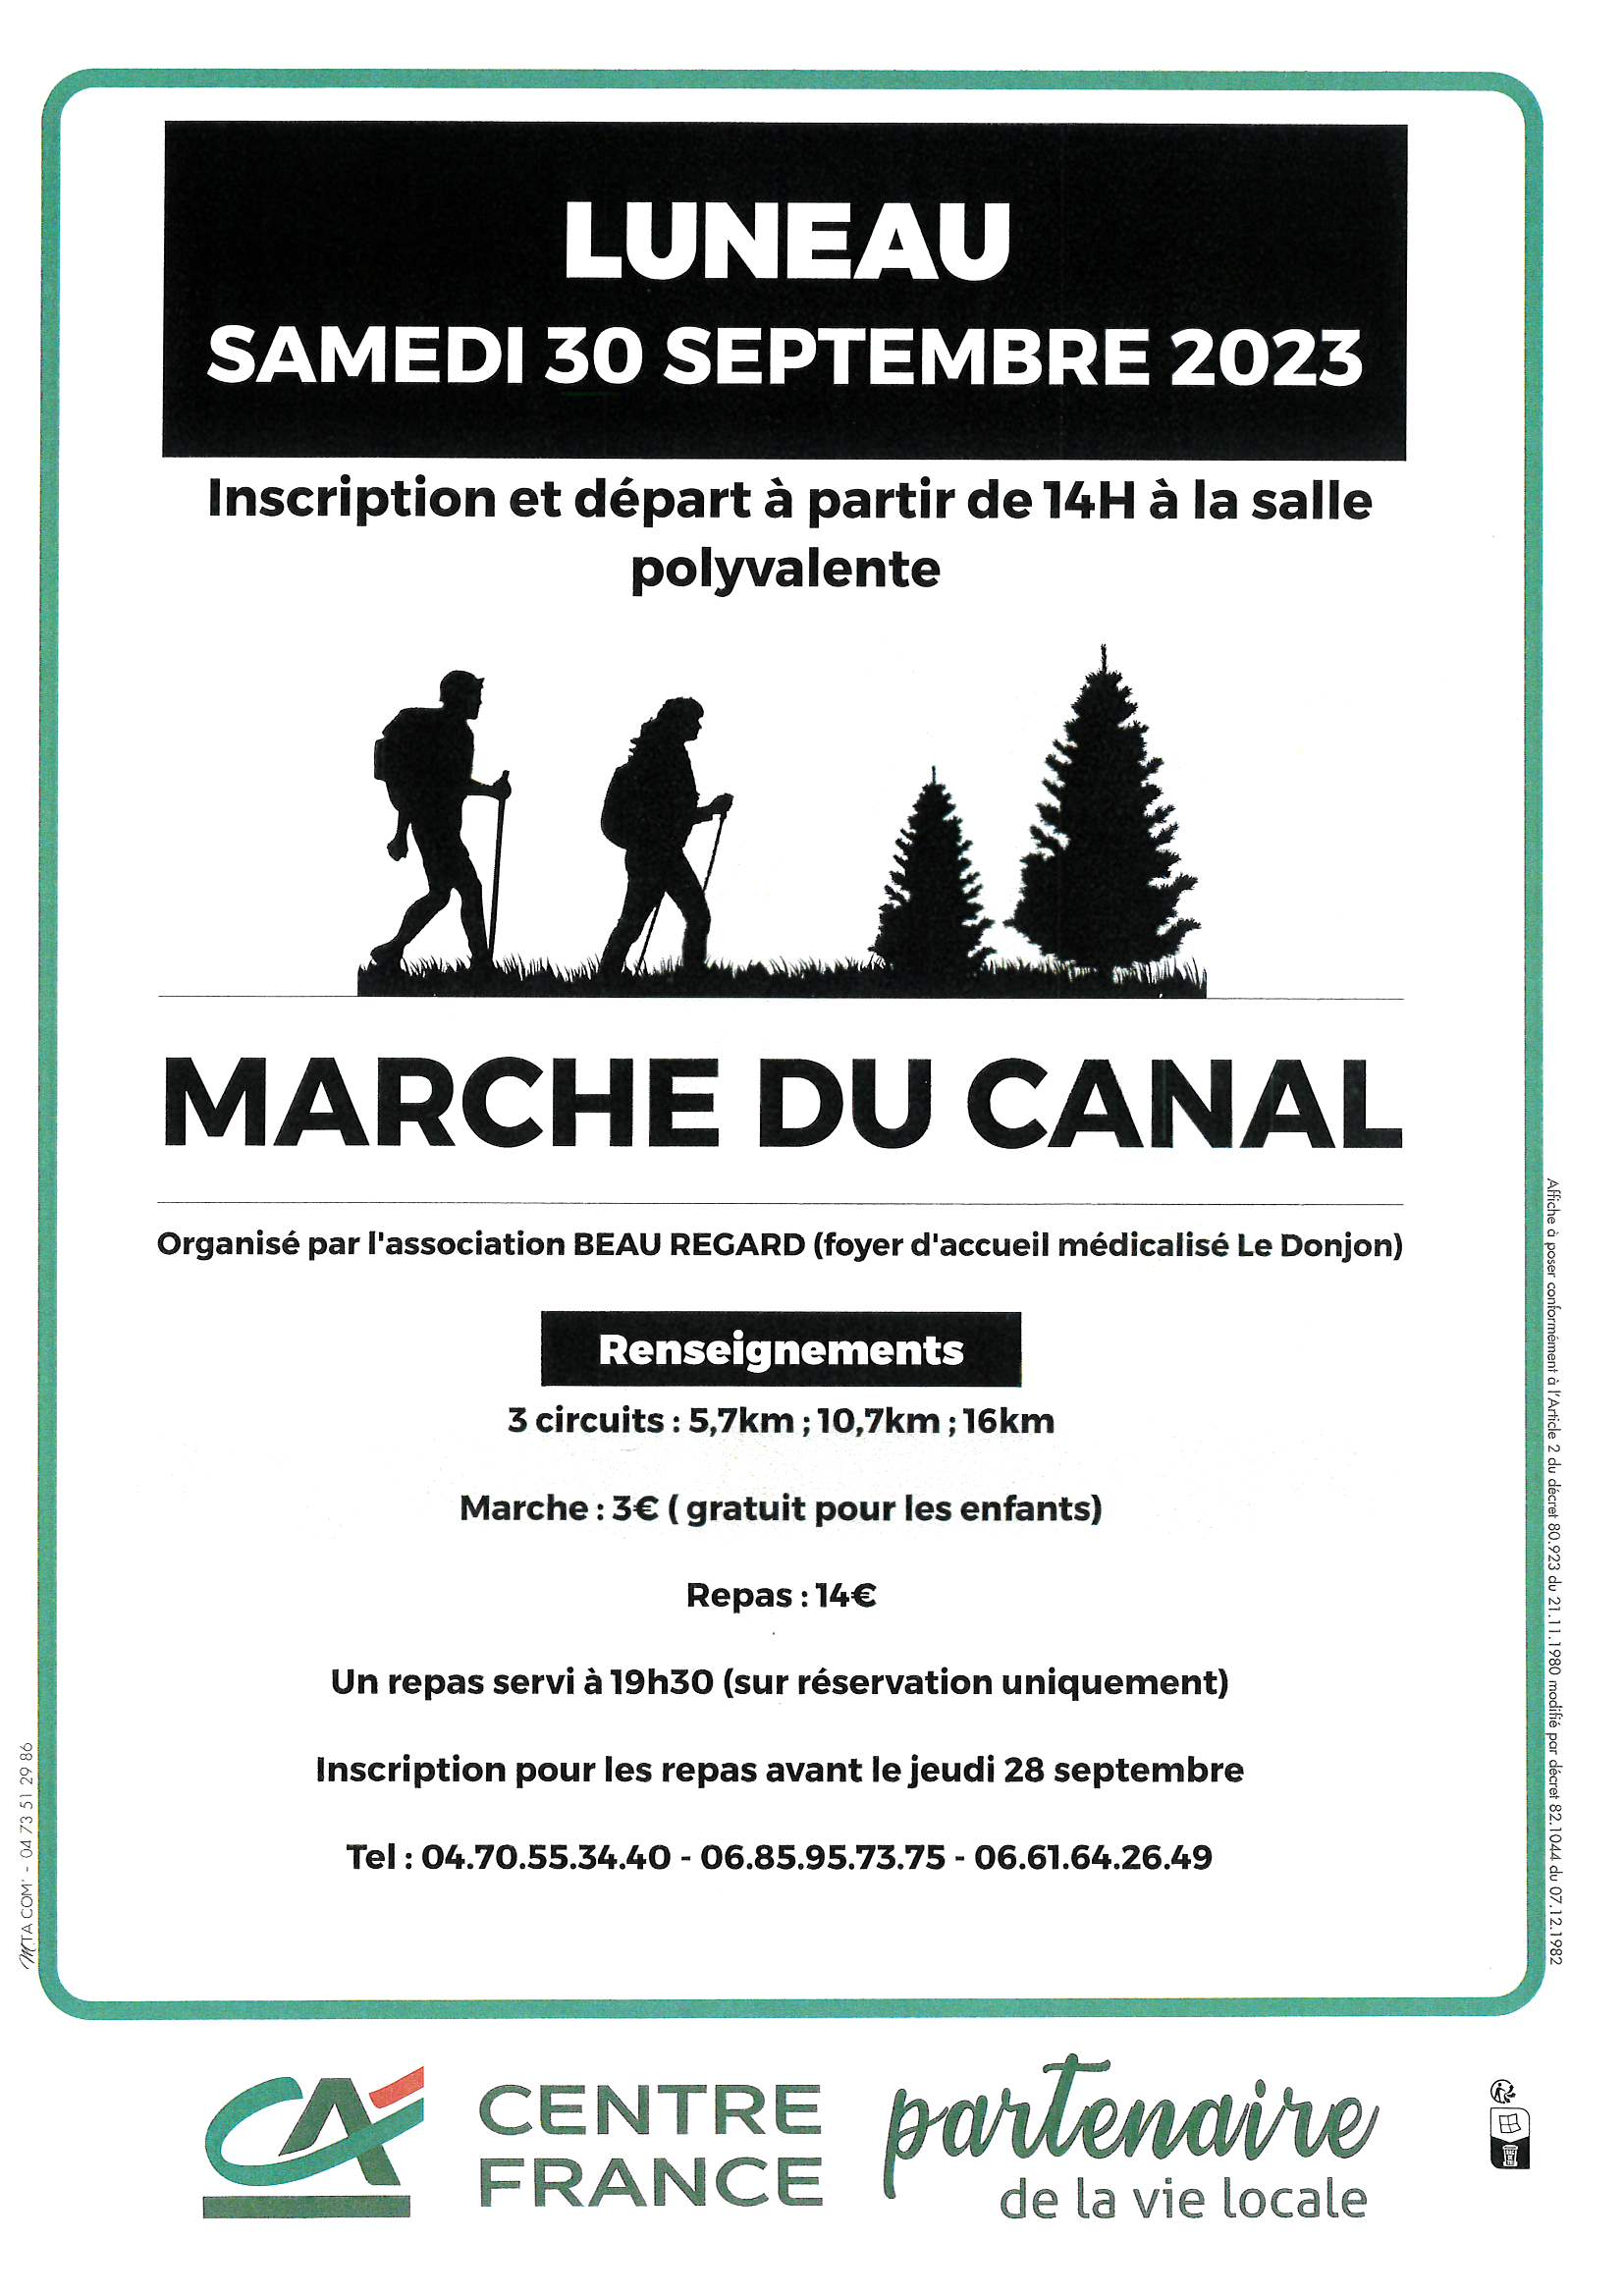 L'ASSOCIATION BEAU REGARD ORGANISE SAMEDI 30 SEPTEMBRE 2023 - MARCHE DU CANAL A 14H ET REPAS A 19H30